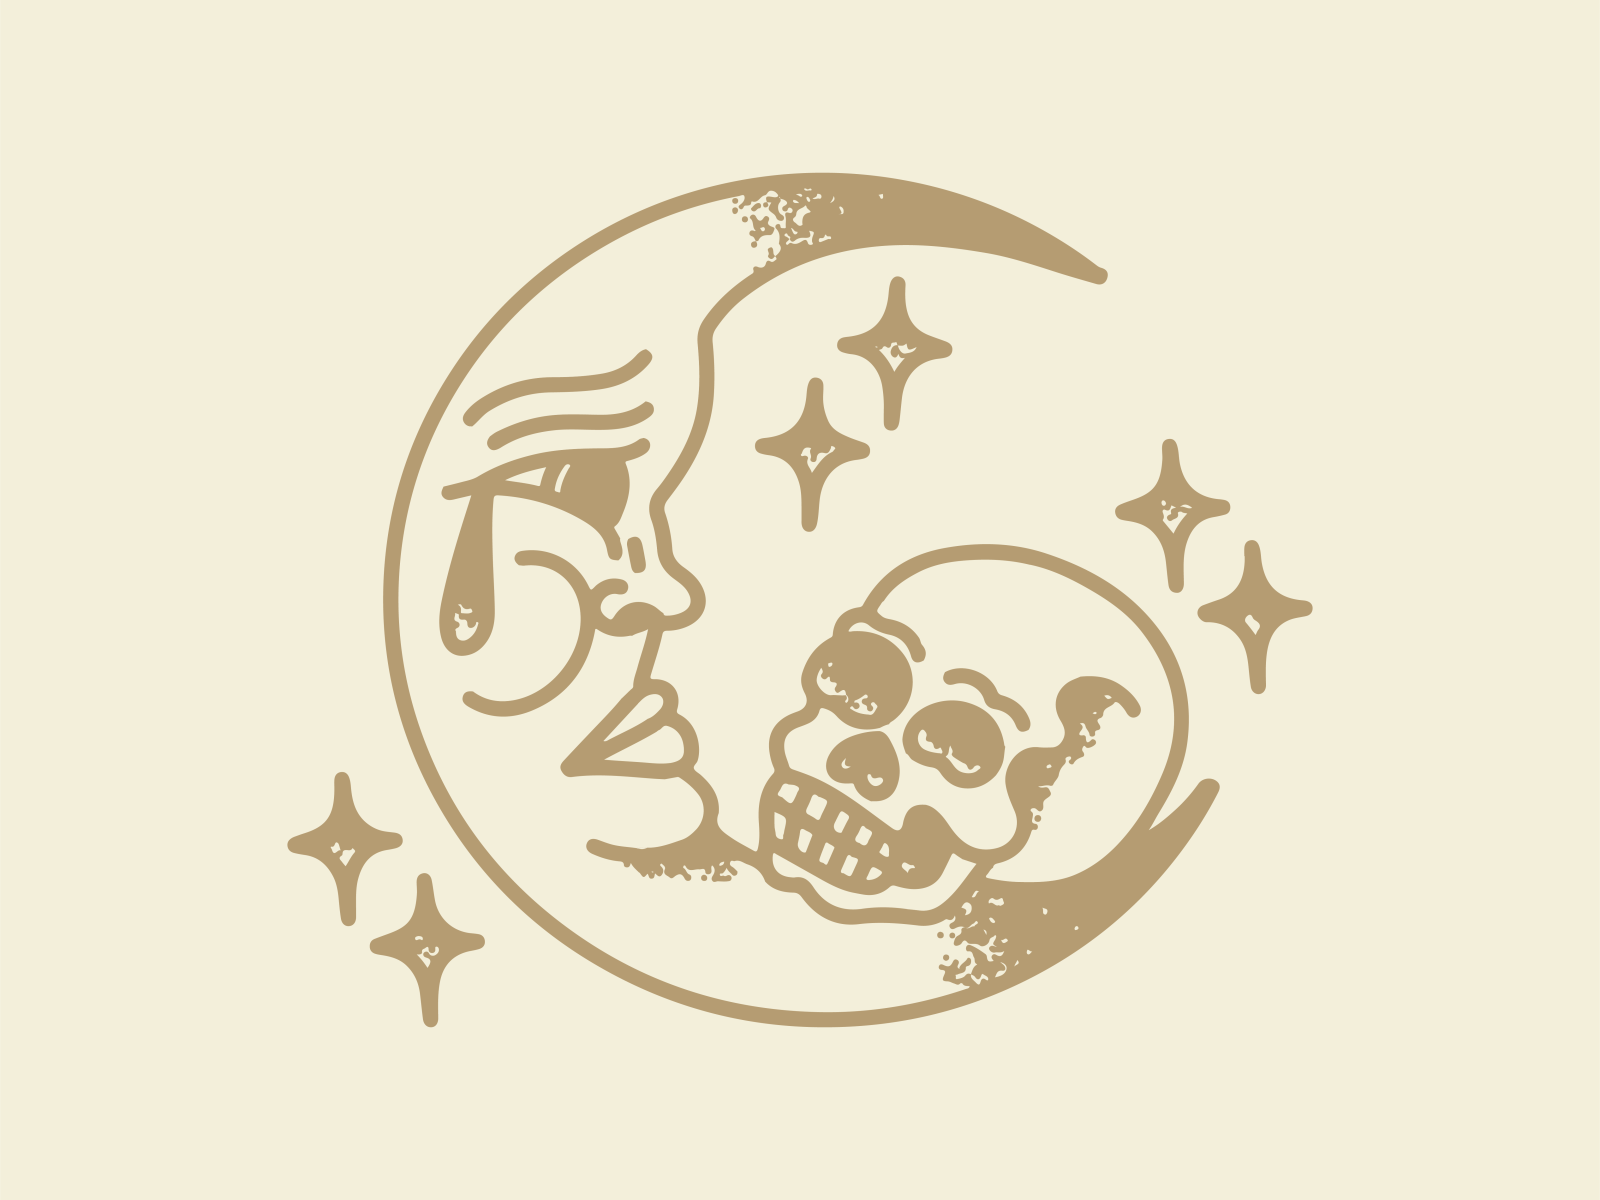 Art Moon skull tattoo stock illustration Illustration of halloween   89548043